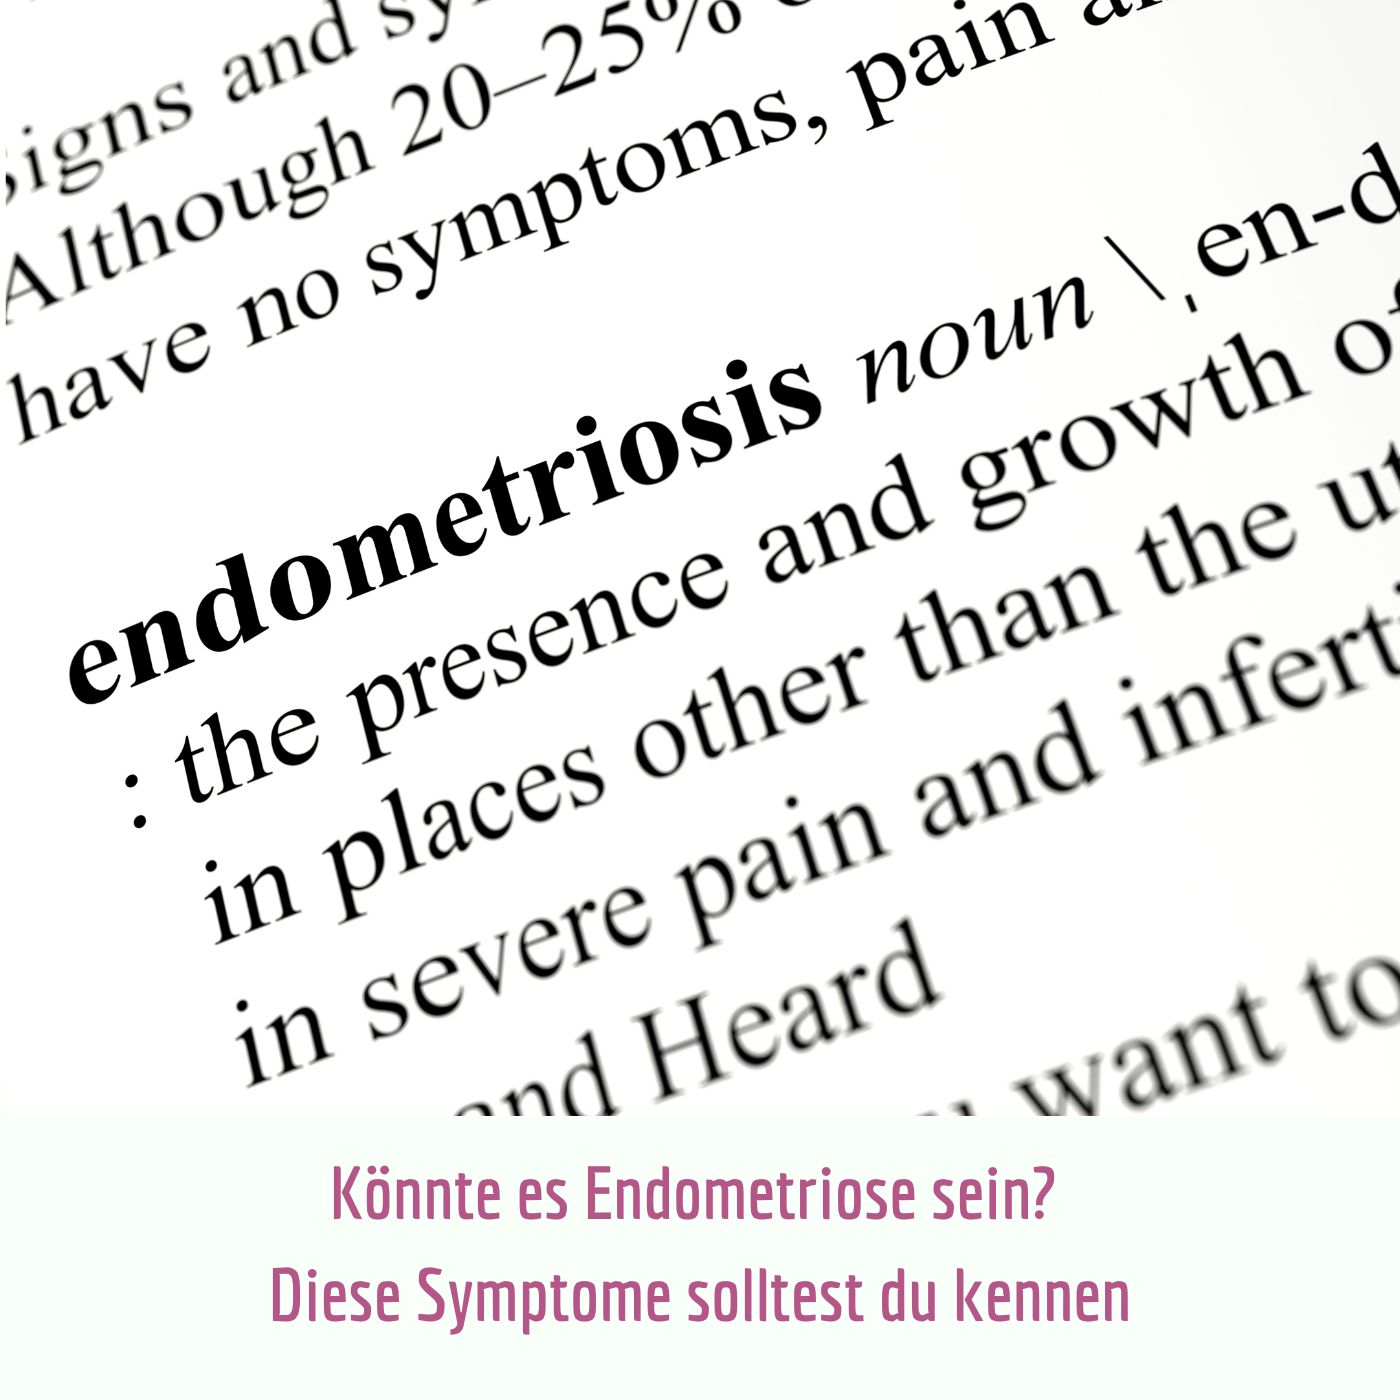 Könnte es Endometriose sein? Diese Symptome solltest du kennen